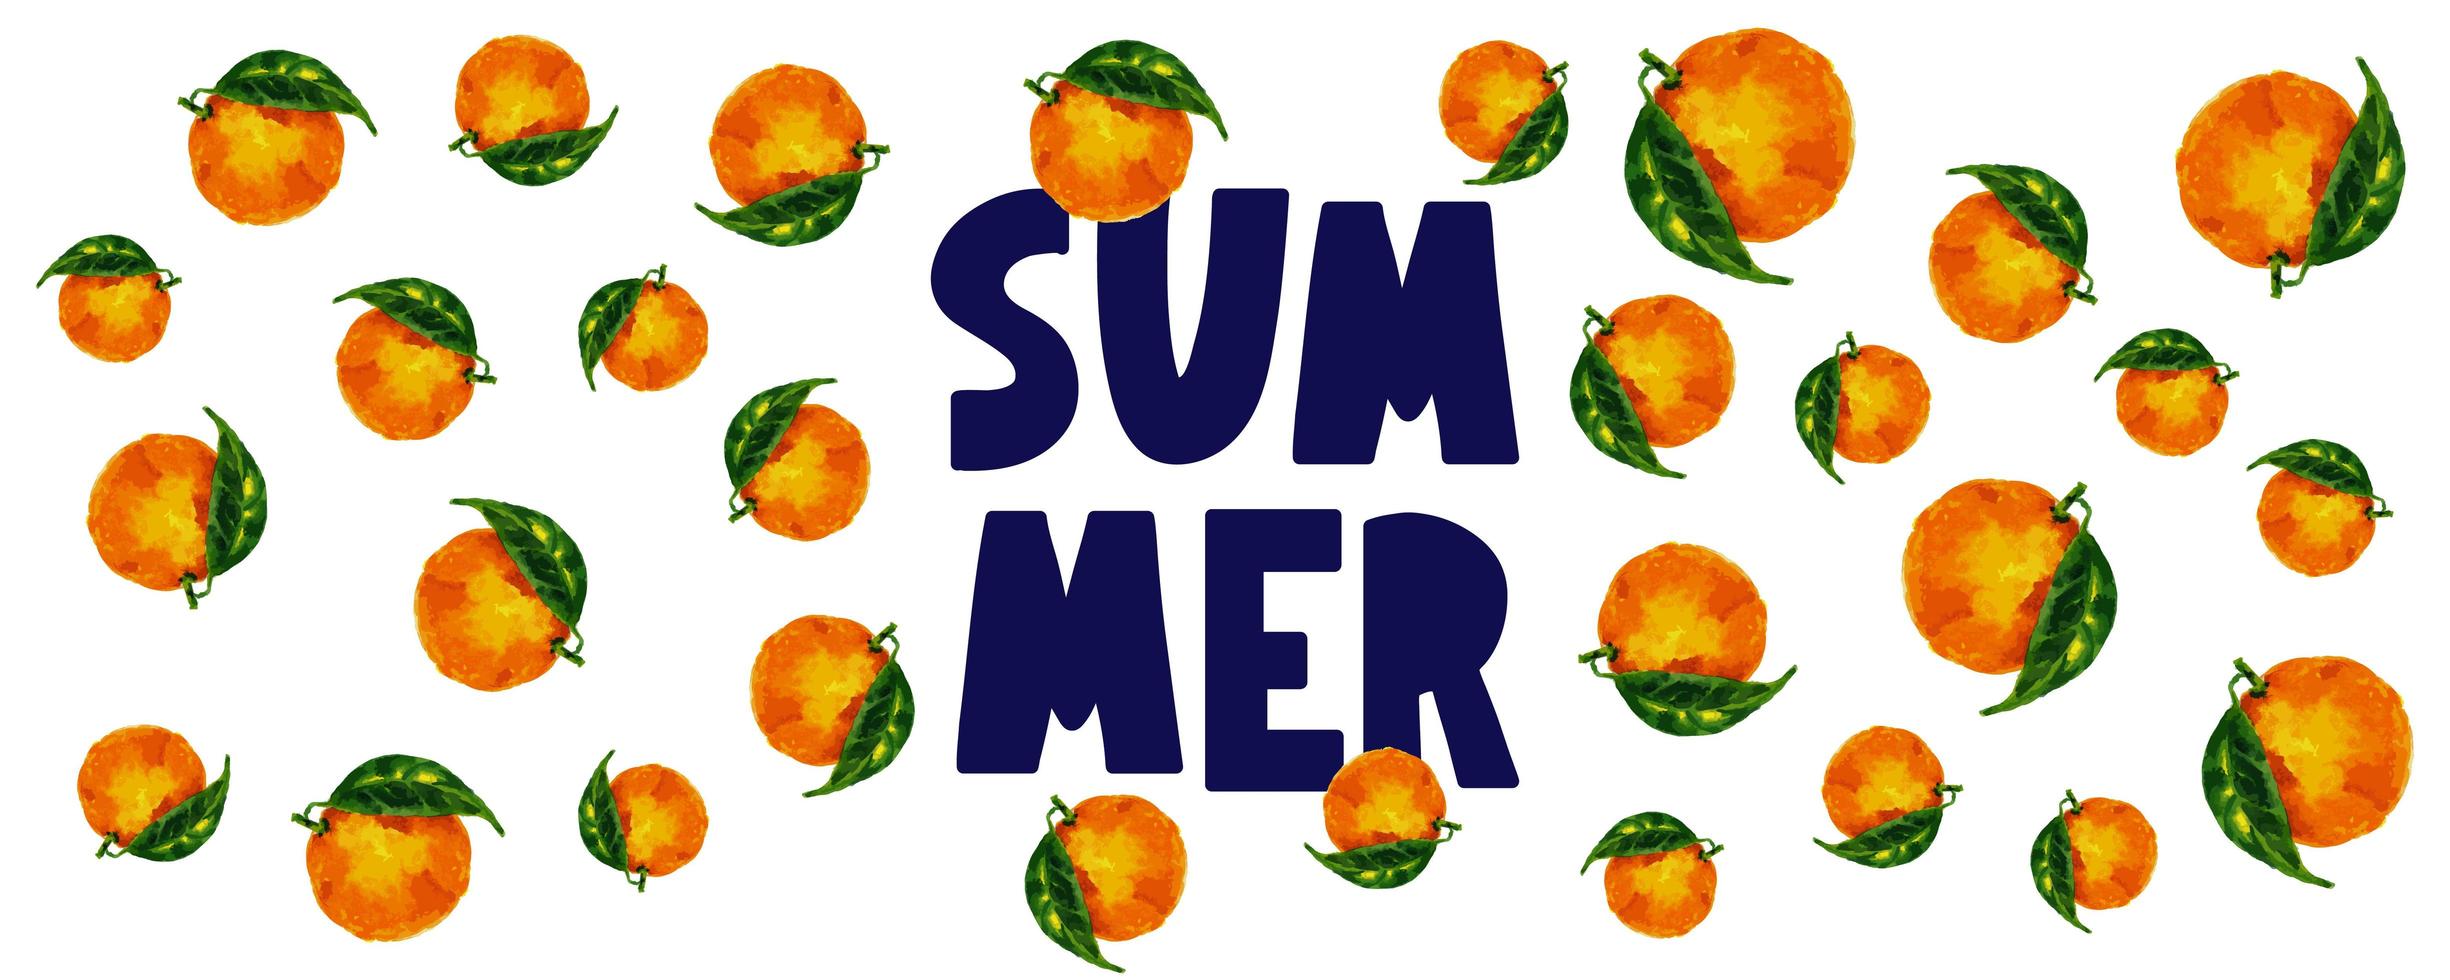 bannière de vente d'été avec vecteur de lettre orange de fruits